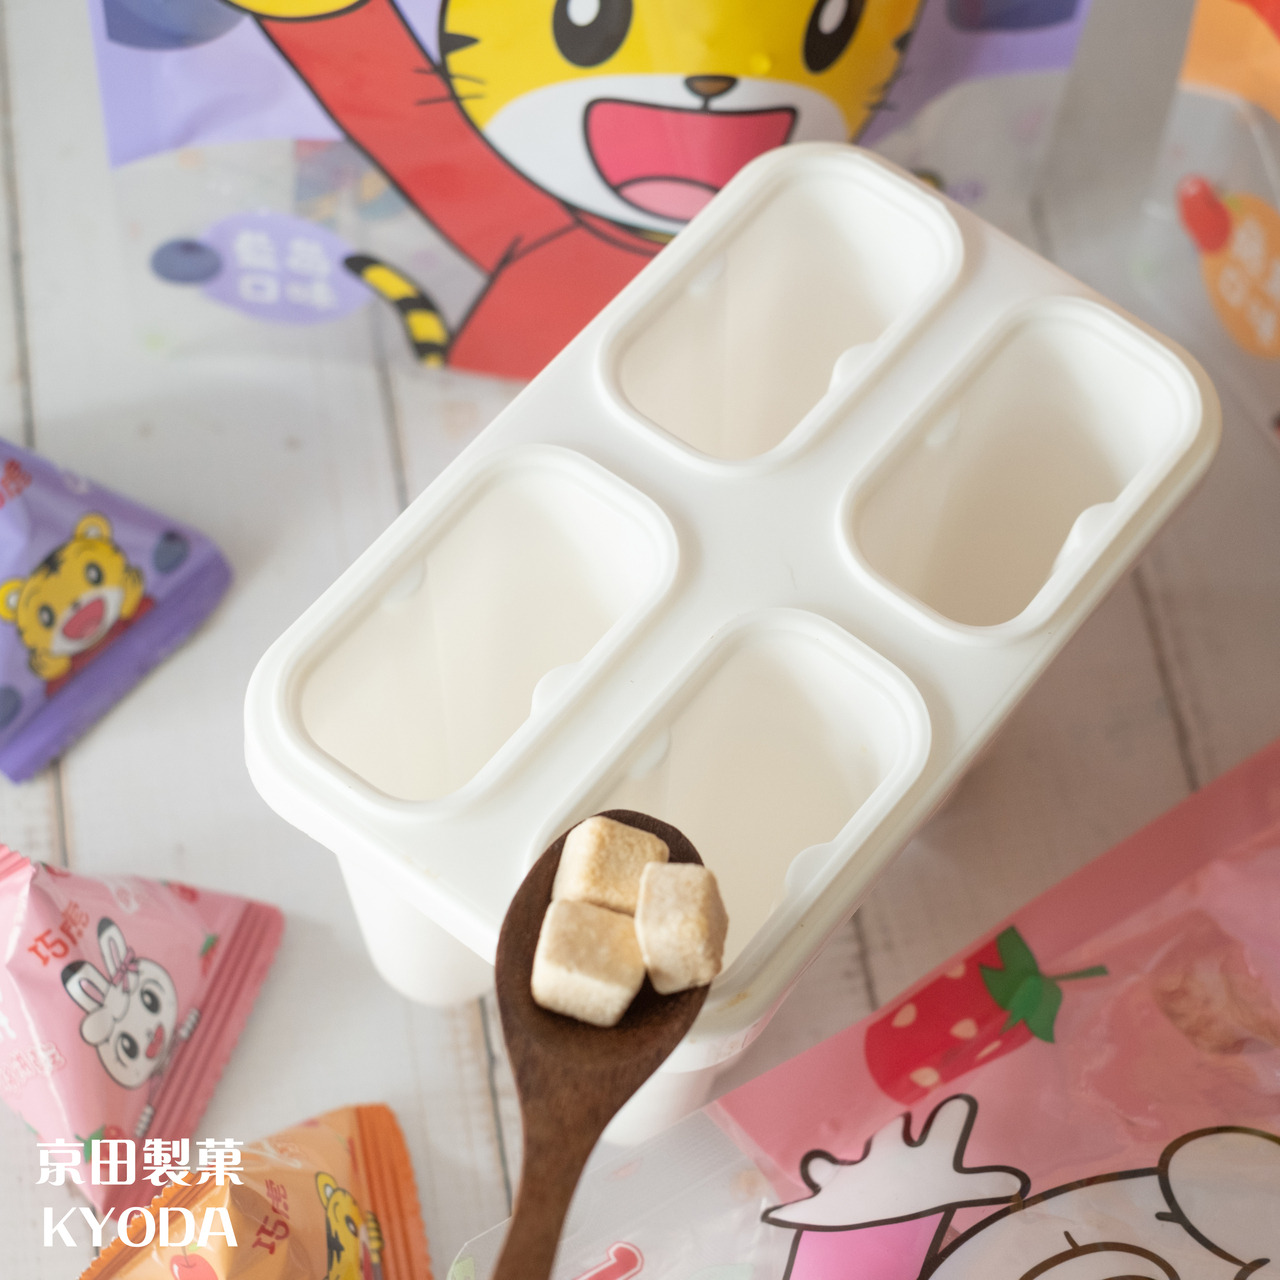 京田教你創意吃 巧虎寶寶乳酸菌優格餅乾 DIY用優格餅乾做夏日網美風漸層水果冰棒